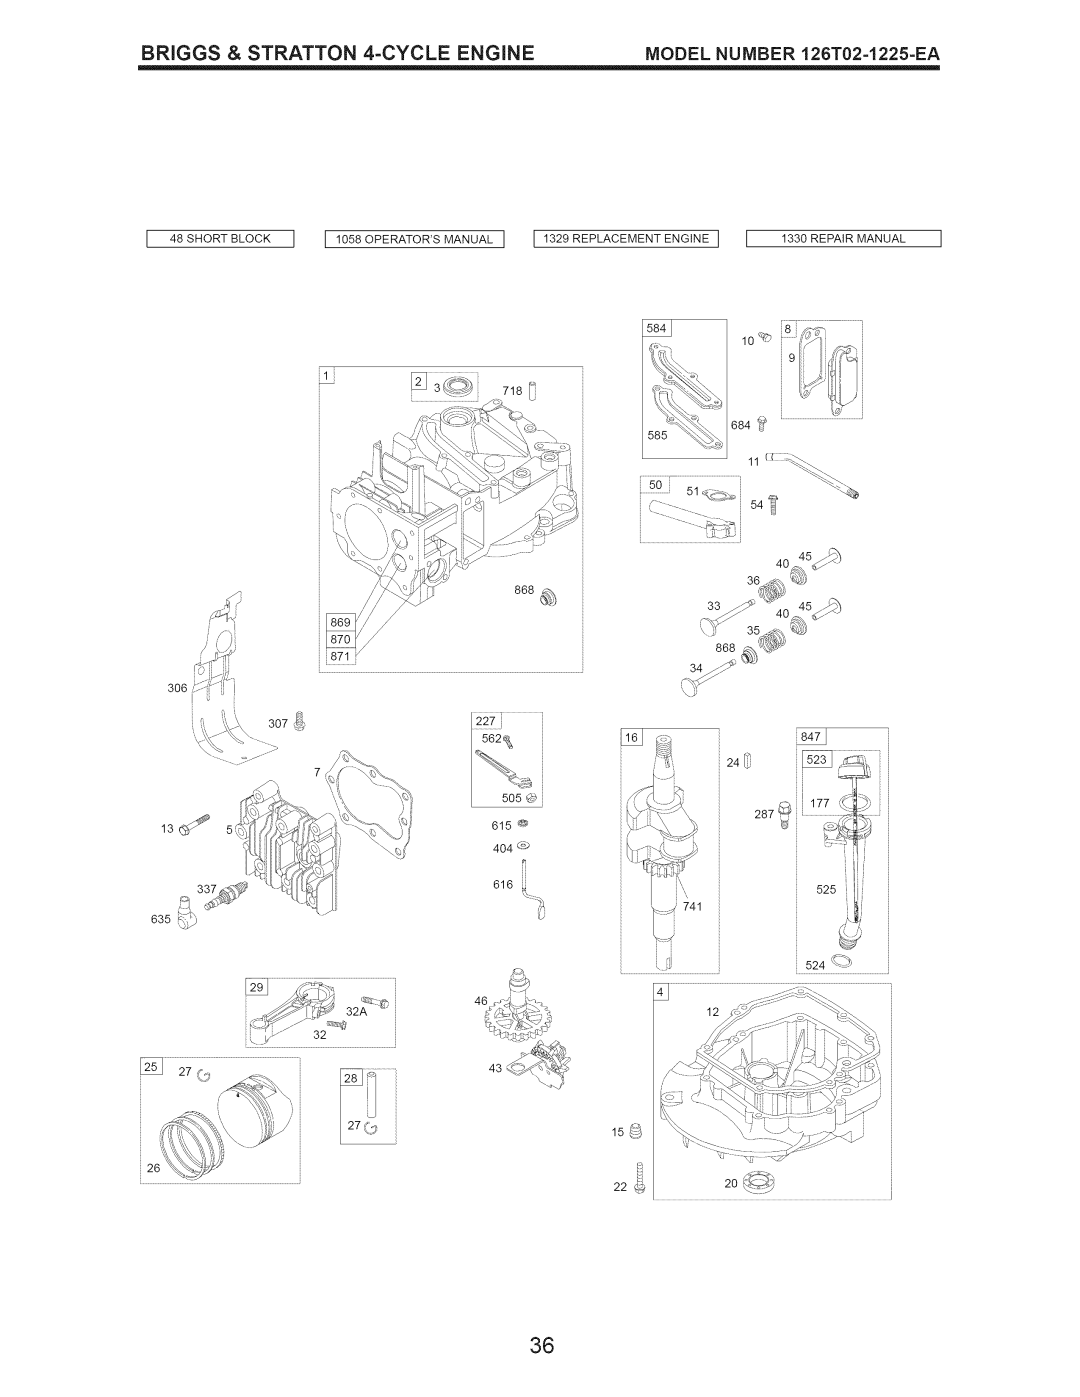 Craftsman 917.389051 manual _84J, _;qL#, Short Block, II058OPERATORSMANUALI I 1329 REPLACEMENT ENGINE, Repair Manual, 562_ 